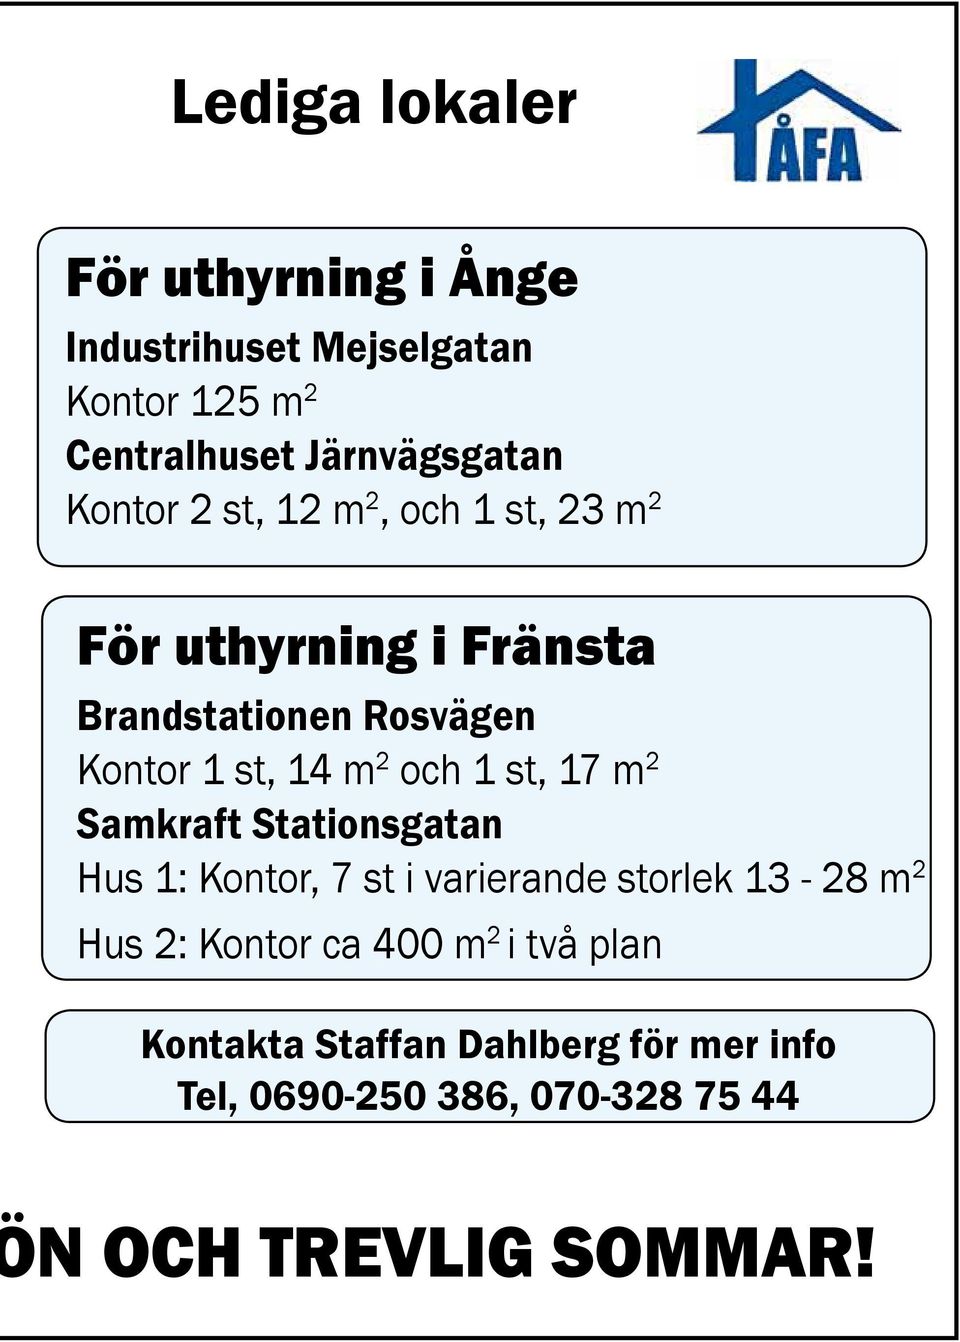 och 1 st, 17 m 2 Samkraft Stationsgatan Hus 1: Kontor, 7 st i varierande storlek 13-28 m 2 Hus 2: Kontor ca